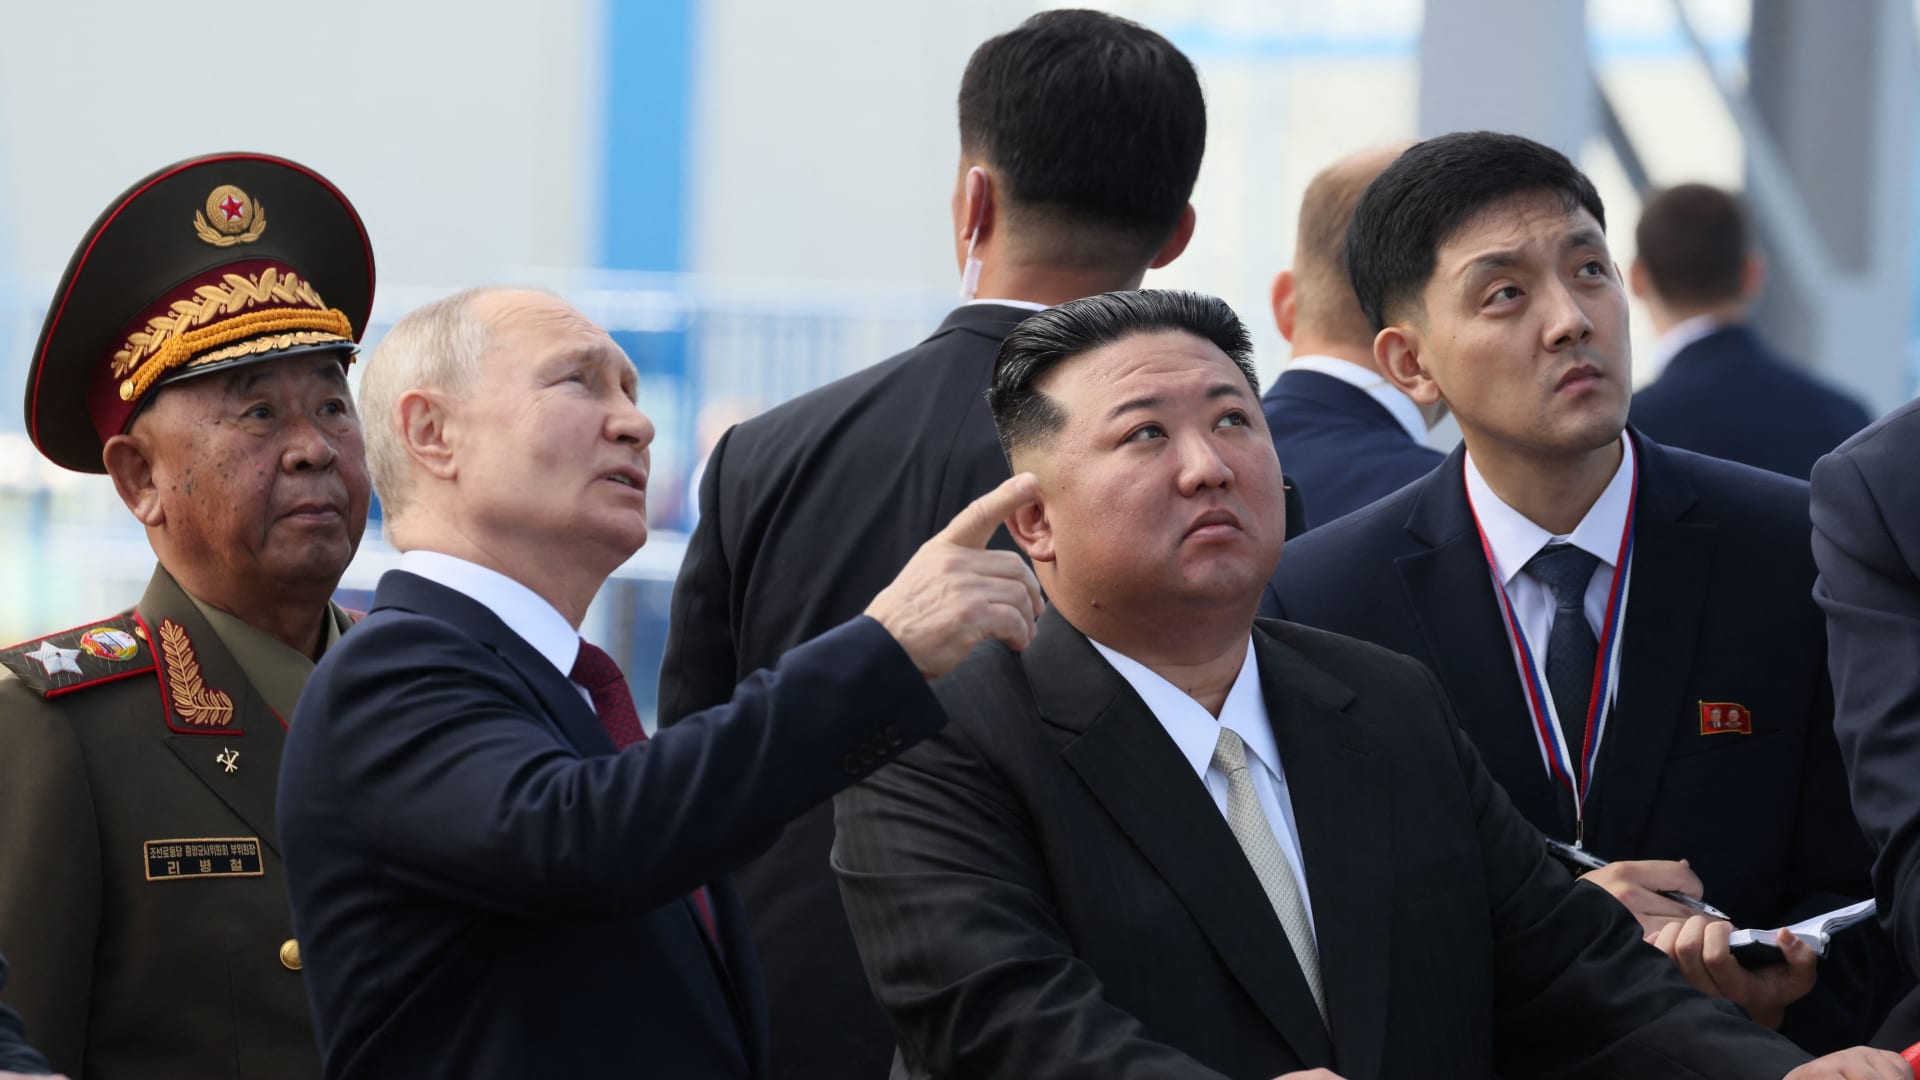 دخل روسيا بقطار مدرع.. شاهد زعيم كوريا الشمالية داخل مقاتلة روسية